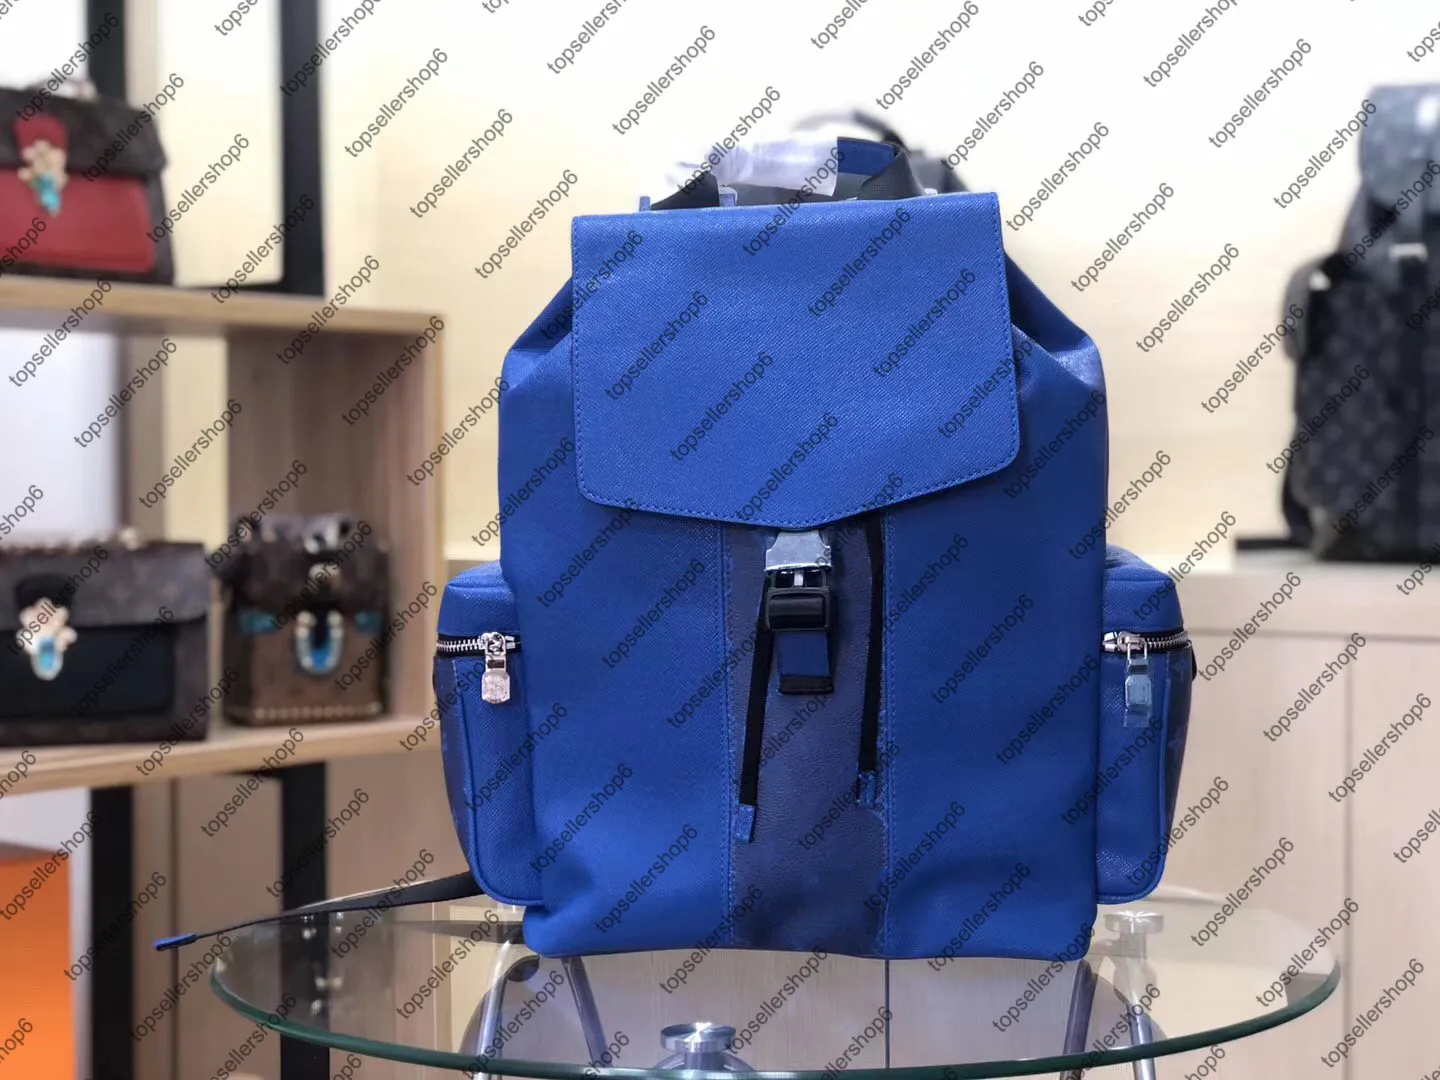 M30417 M30419 OUTDOOR BACKPACK bag genuine cowhide leather Eclipse canvas designer men travel Luggage satchel purse tote shoulder 284C